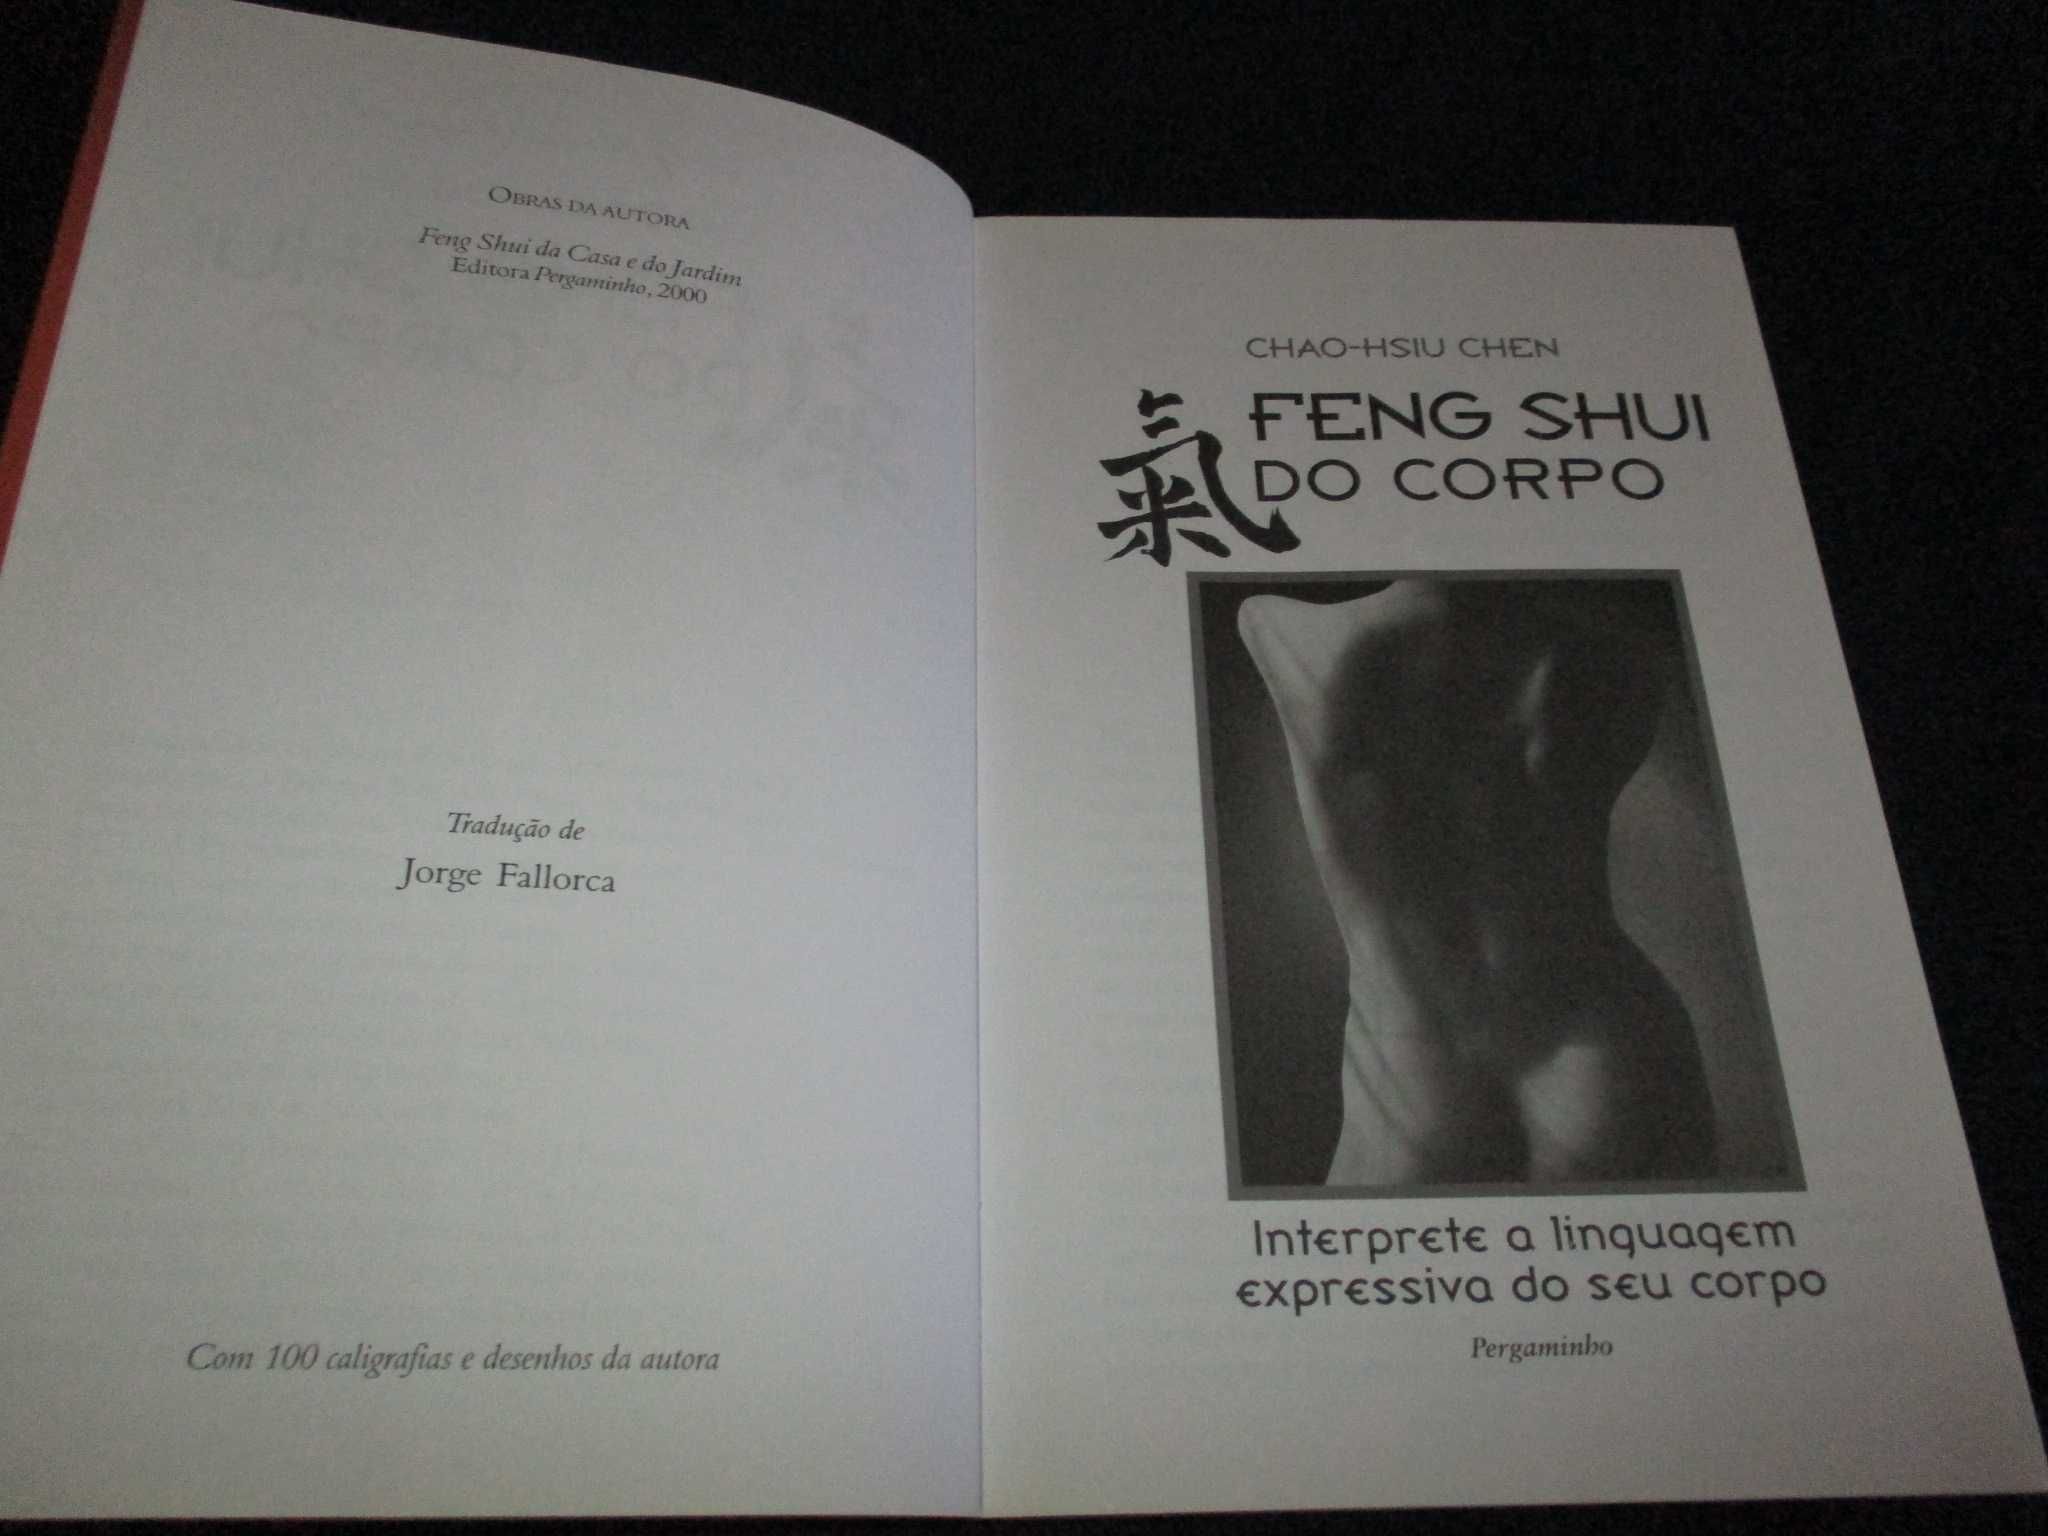 Livro Feng Shui do Corpo Chao-Hsiu Chen